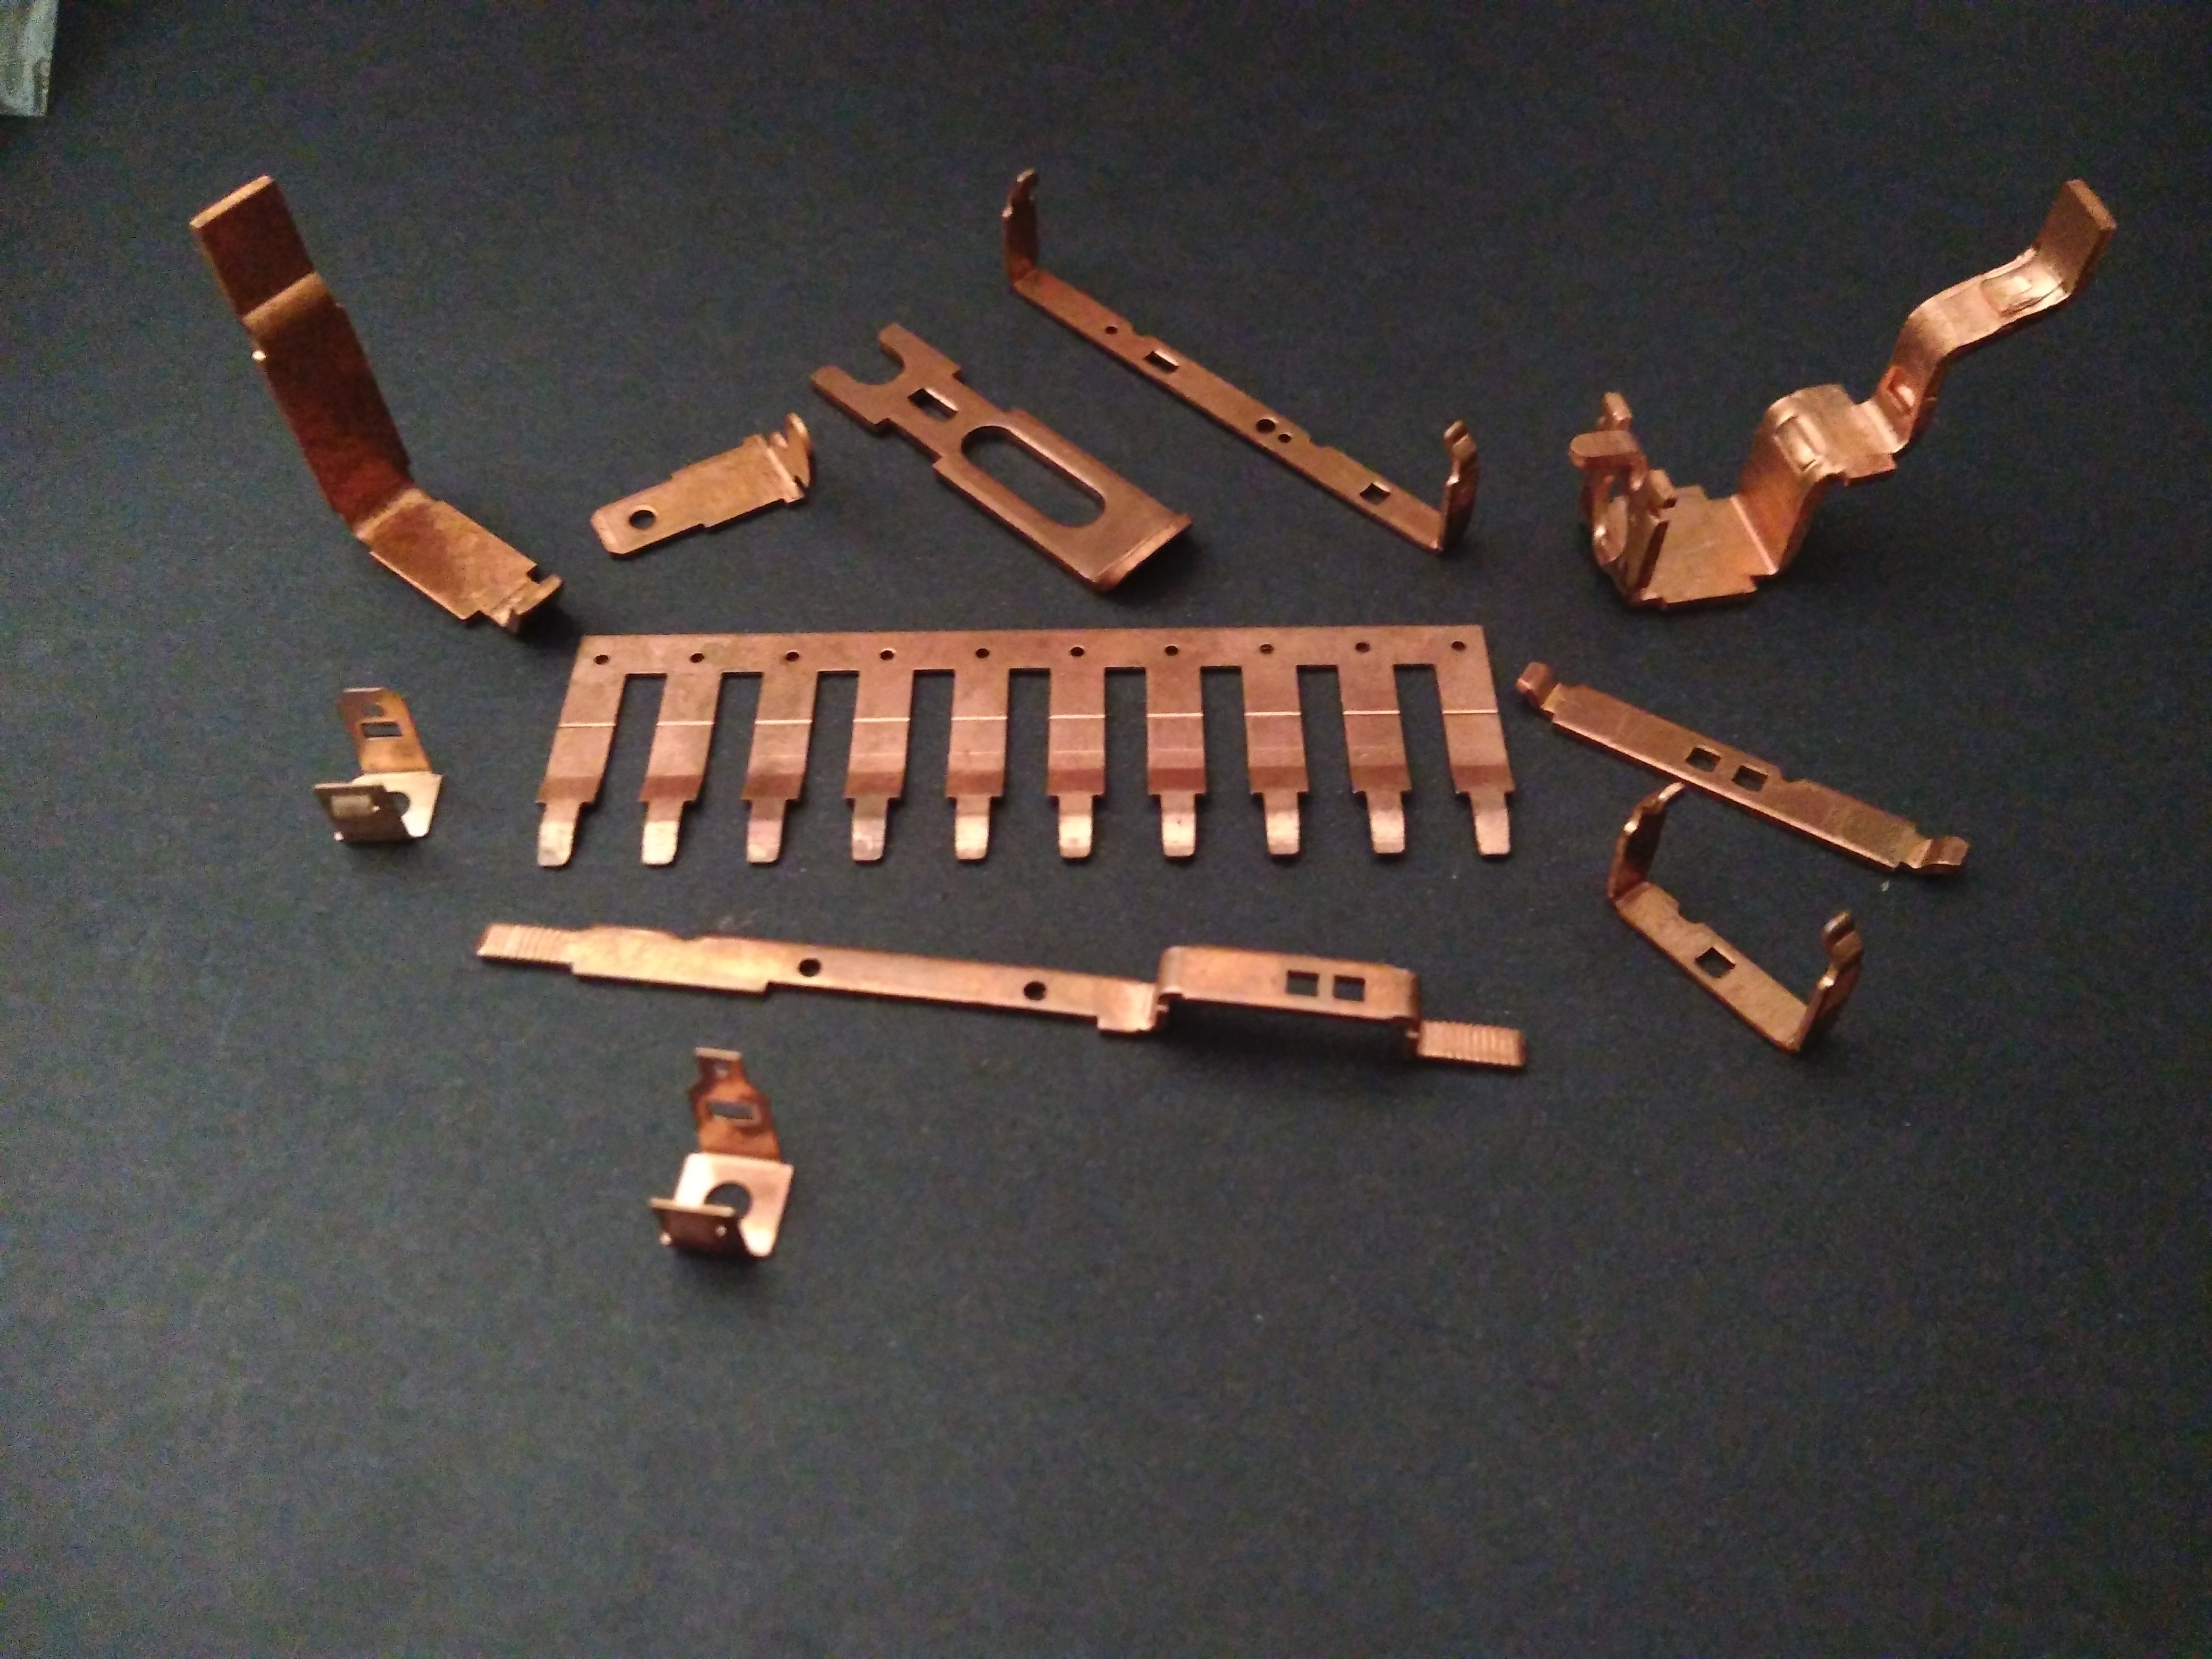 press tool components